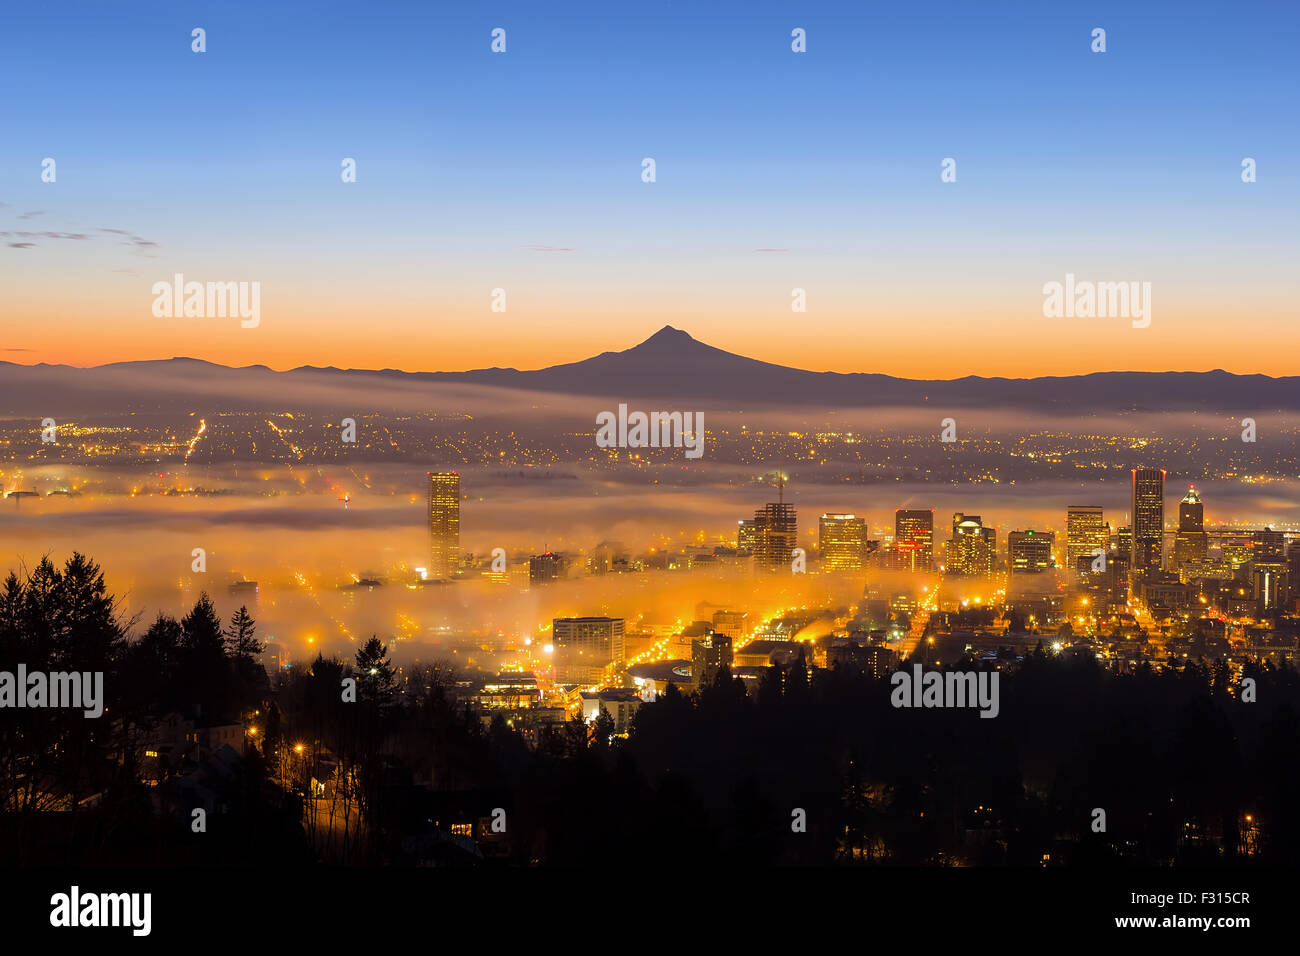 El centro de Portland, Oregón, ciudad con la silueta del Monte Hood cubierto de niebla baja durante el amanecer Foto de stock